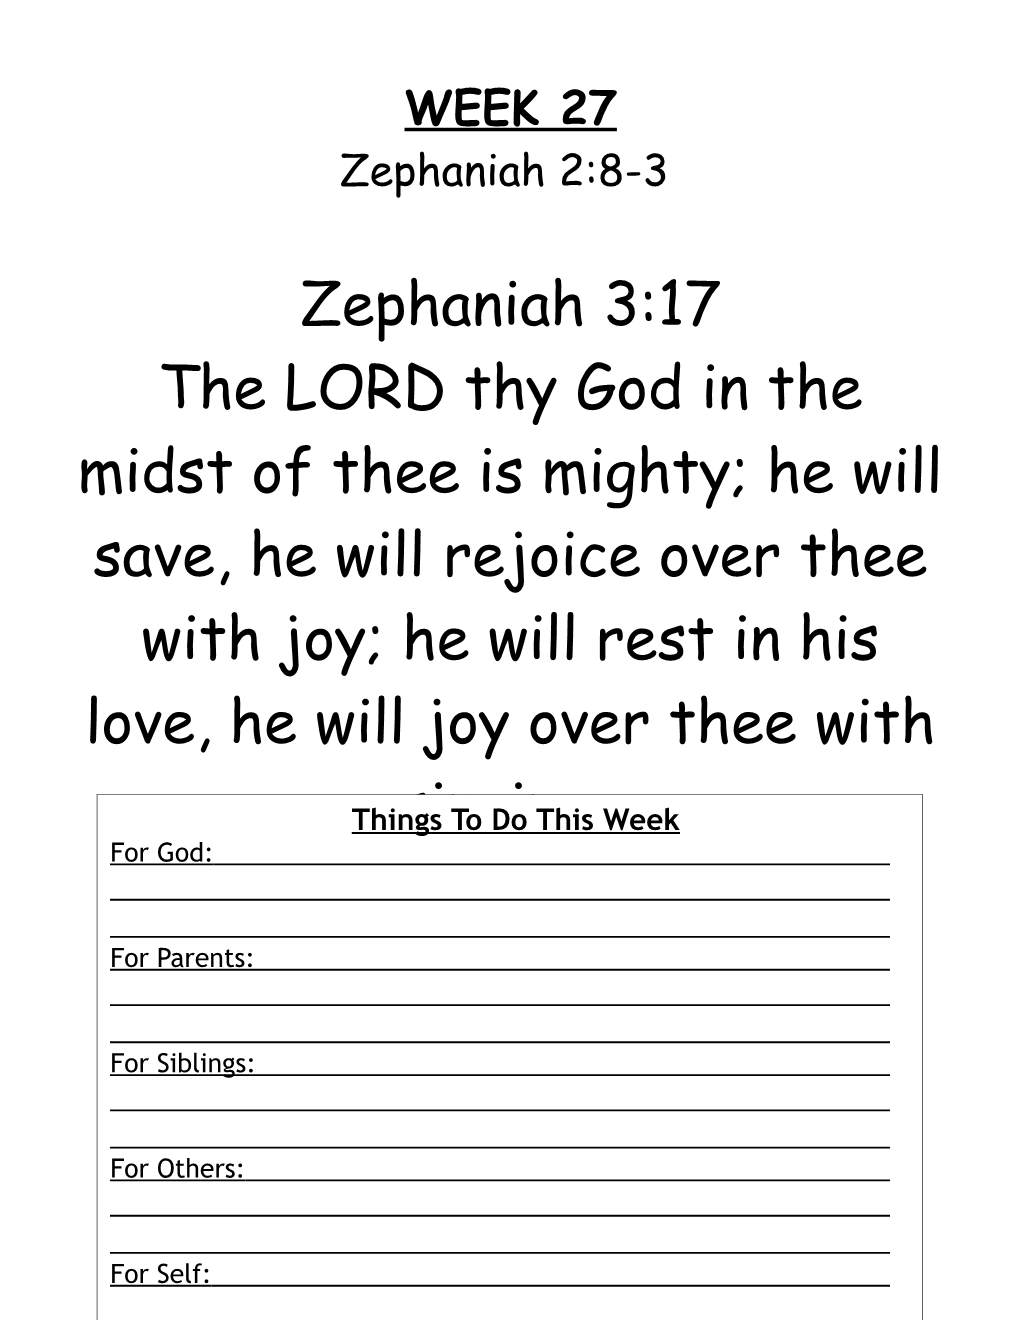 Weekly Memory Verse Zephaniah 3:17